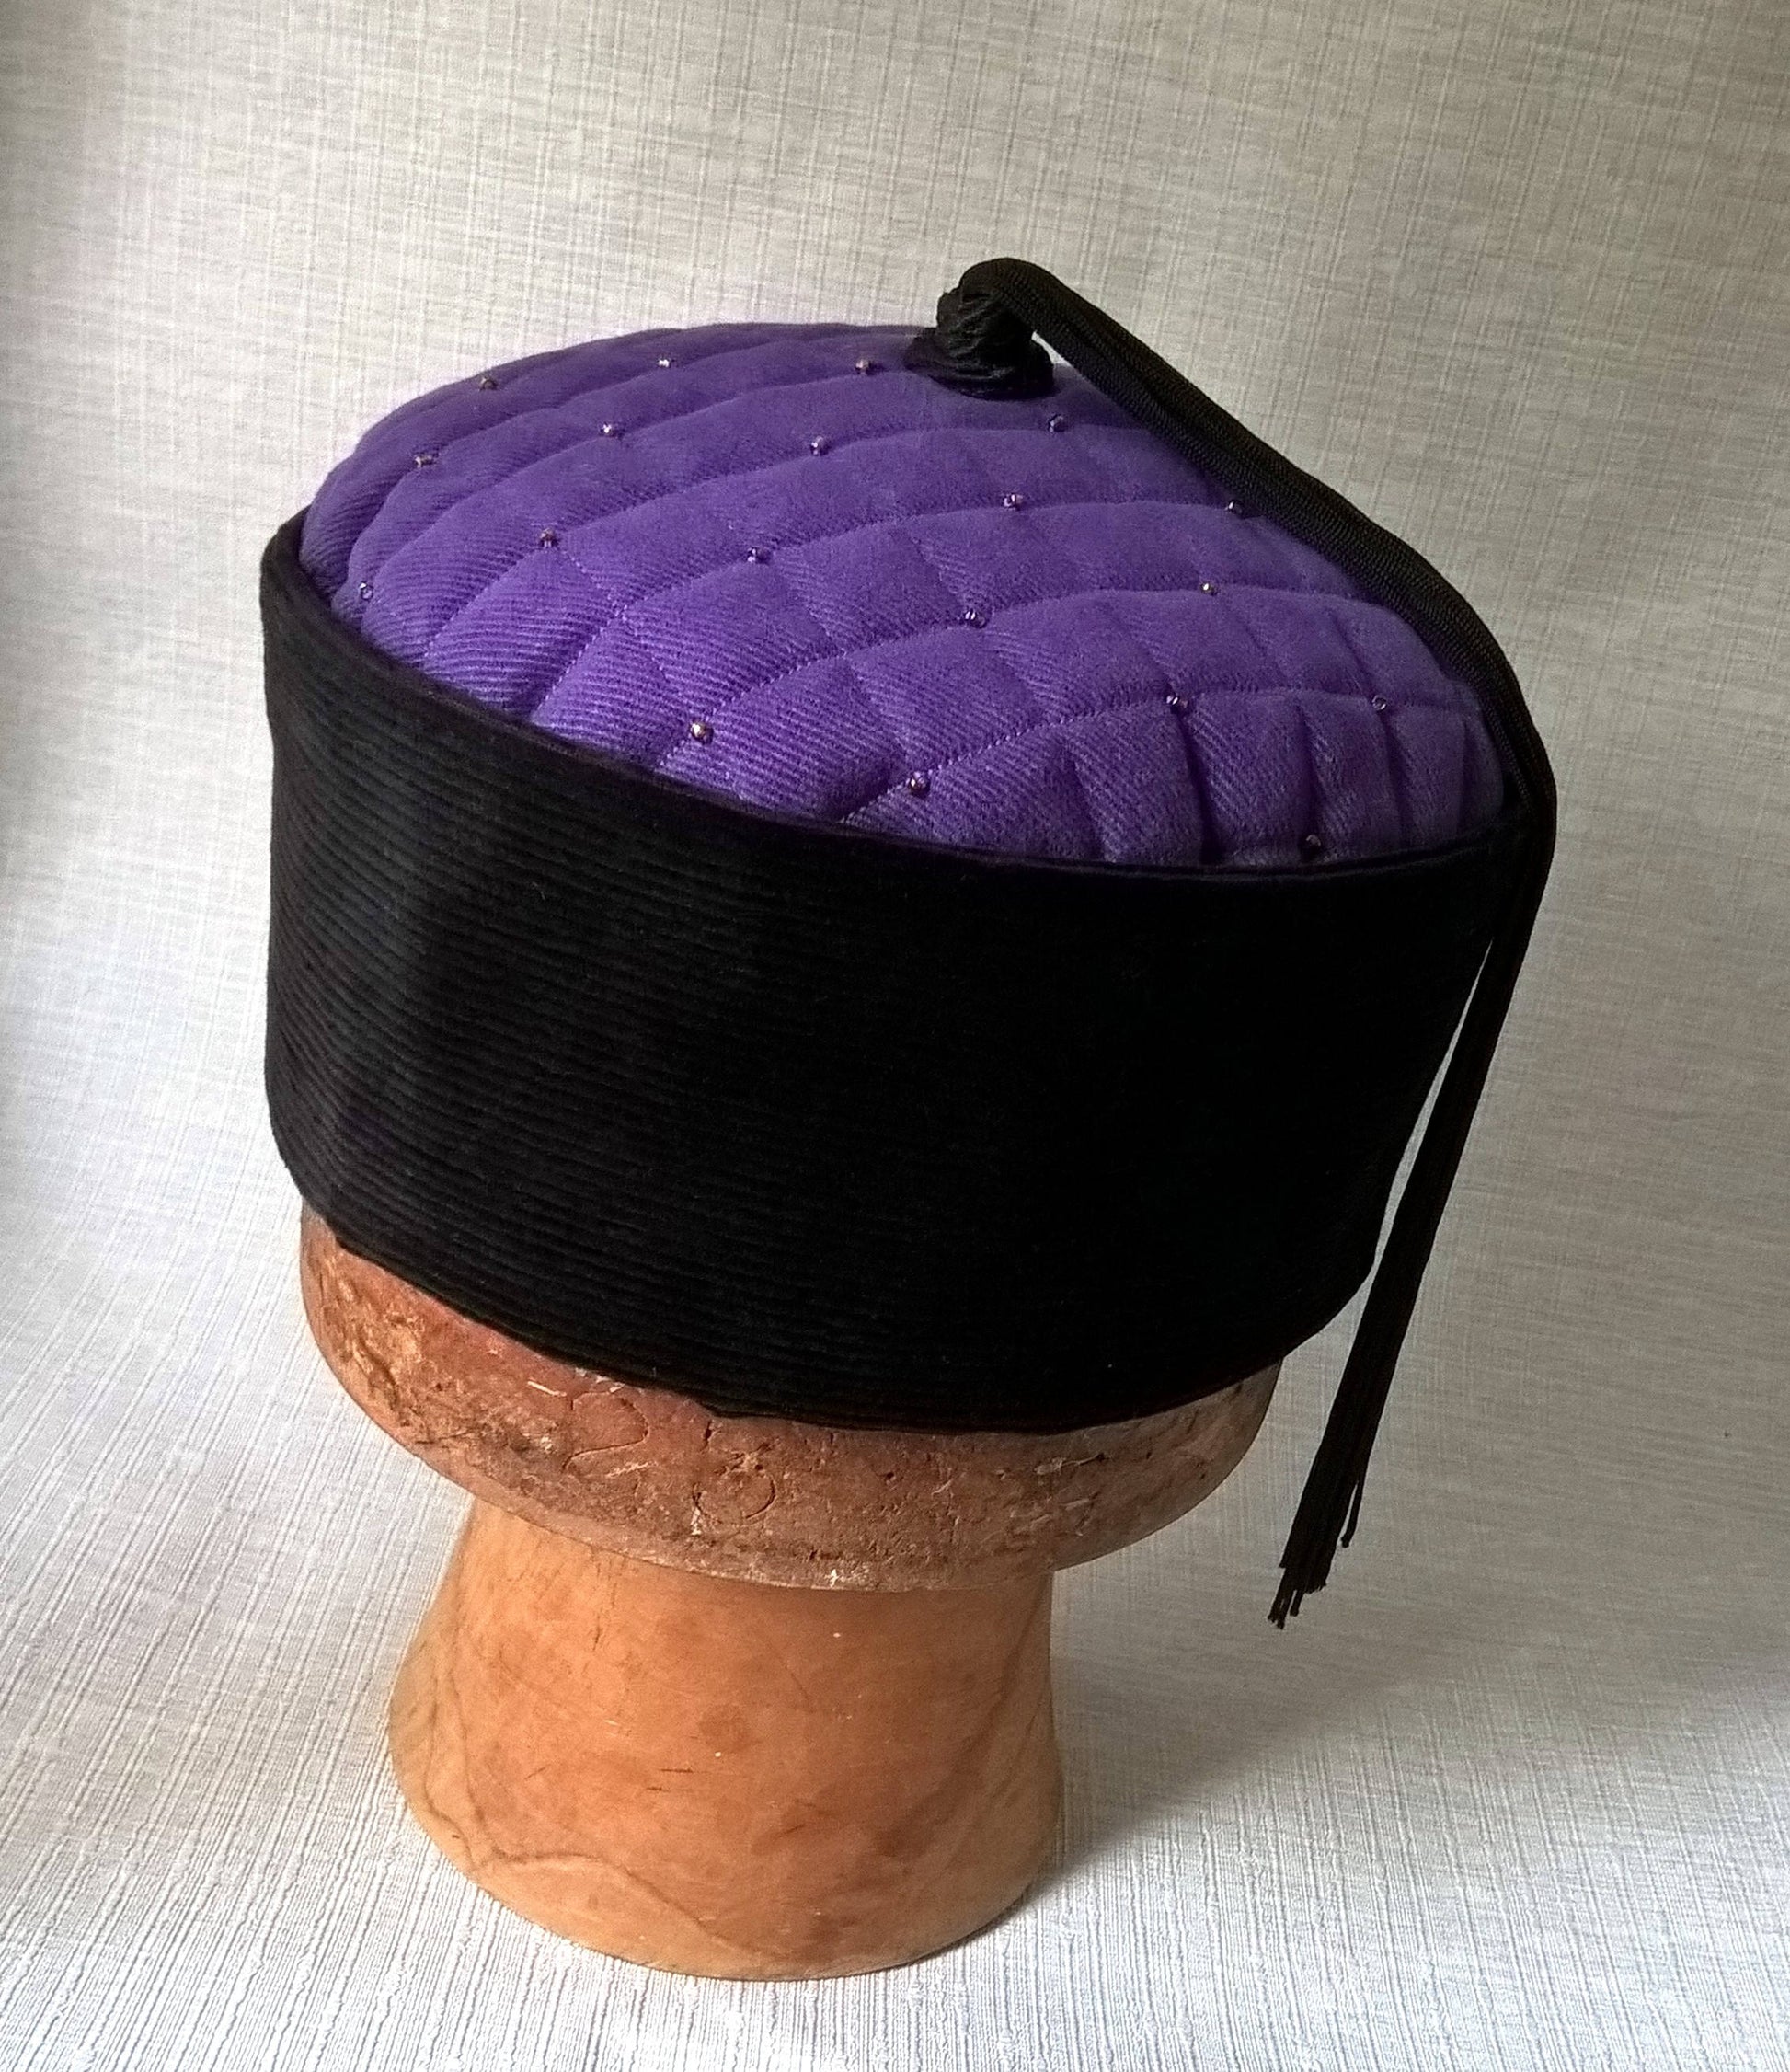 The purple lounge cap has a jet black corduroy crown